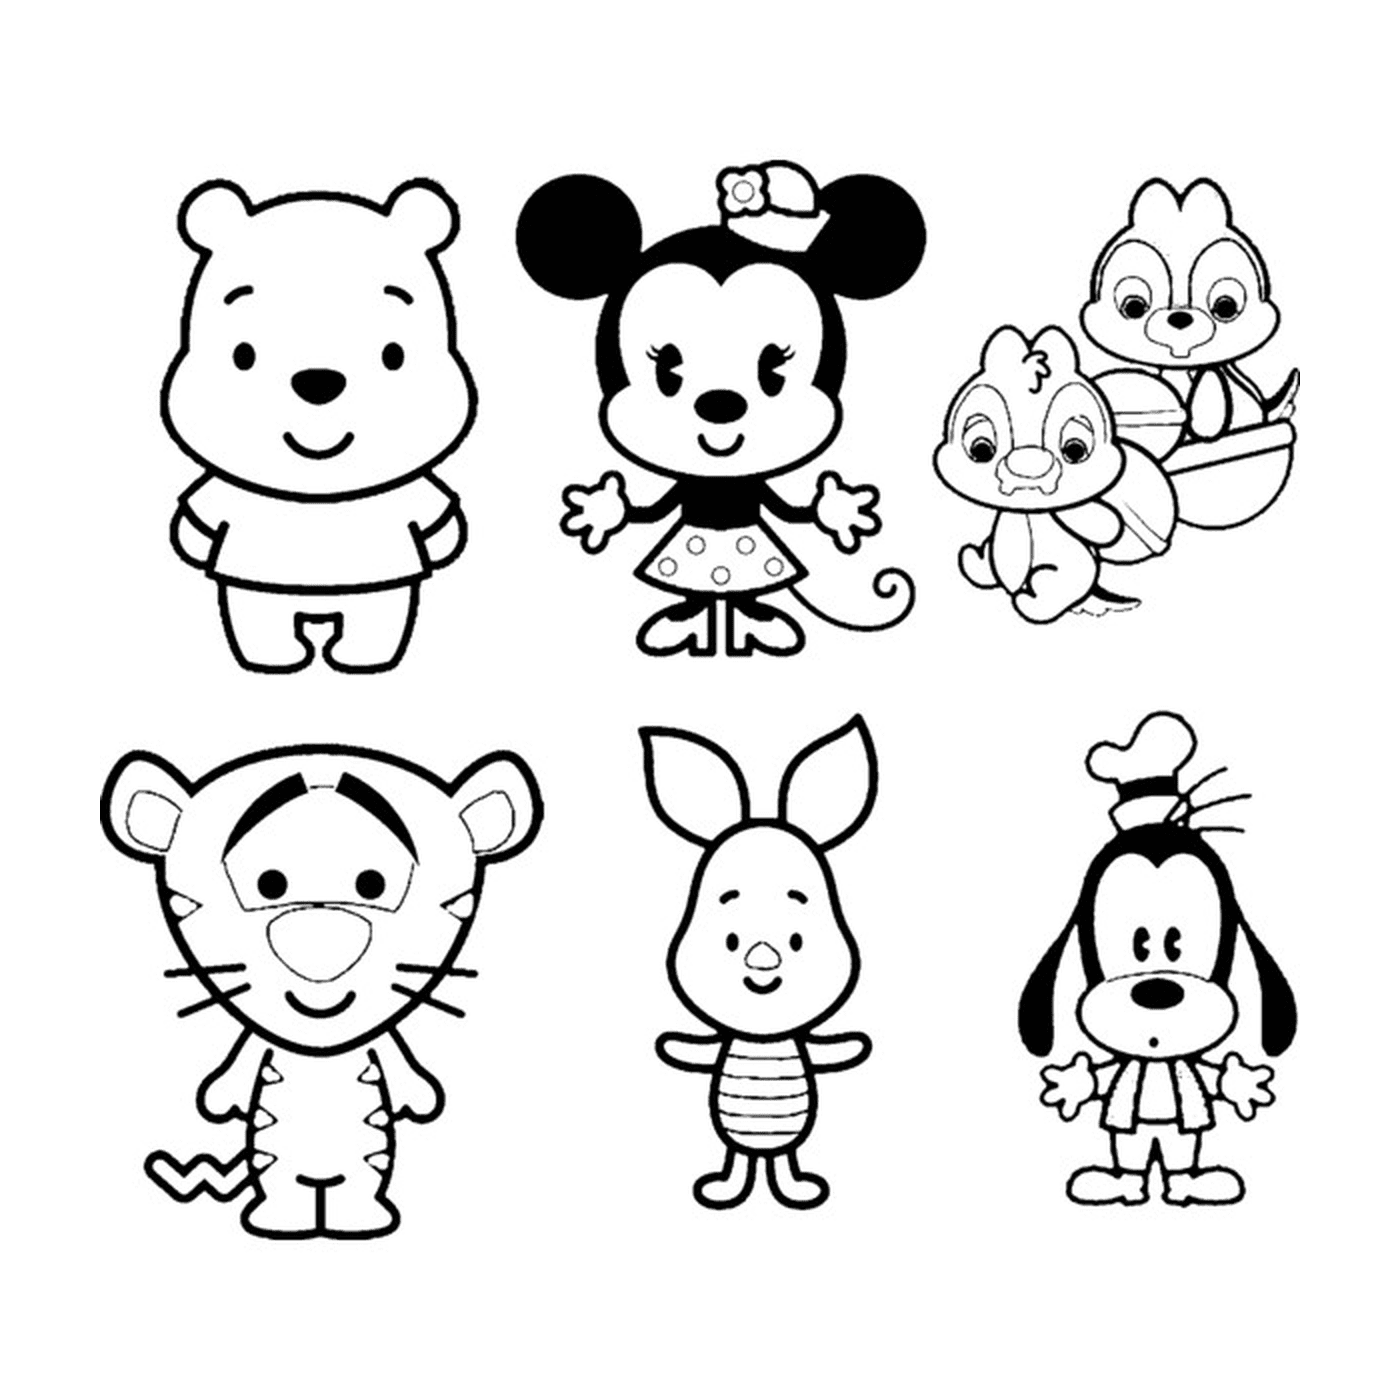  Cute Disney characters 